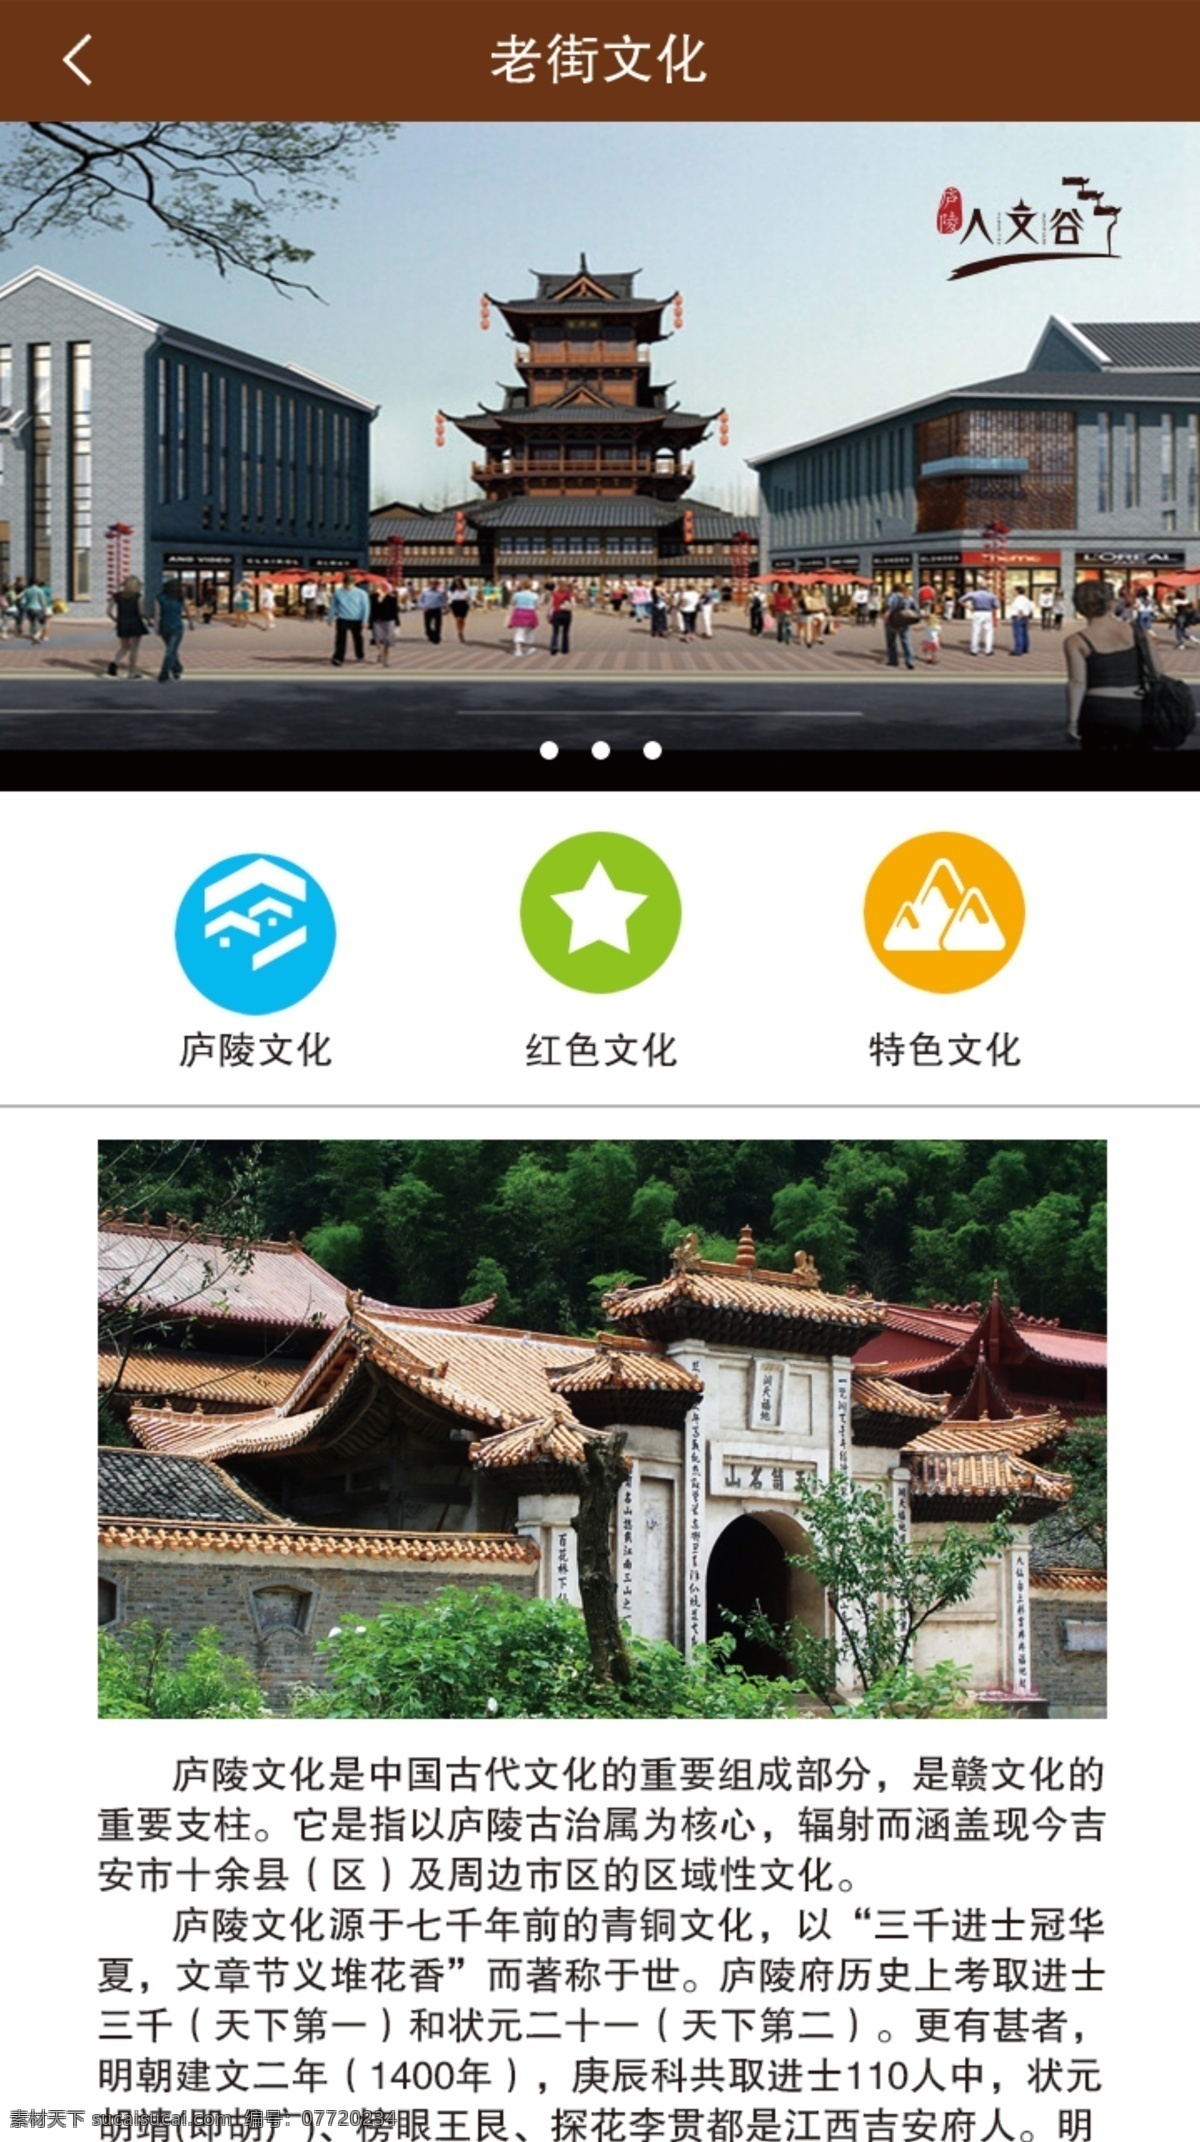 老街 文化 庐陵 app 界面设计 app图片 app图标 白色